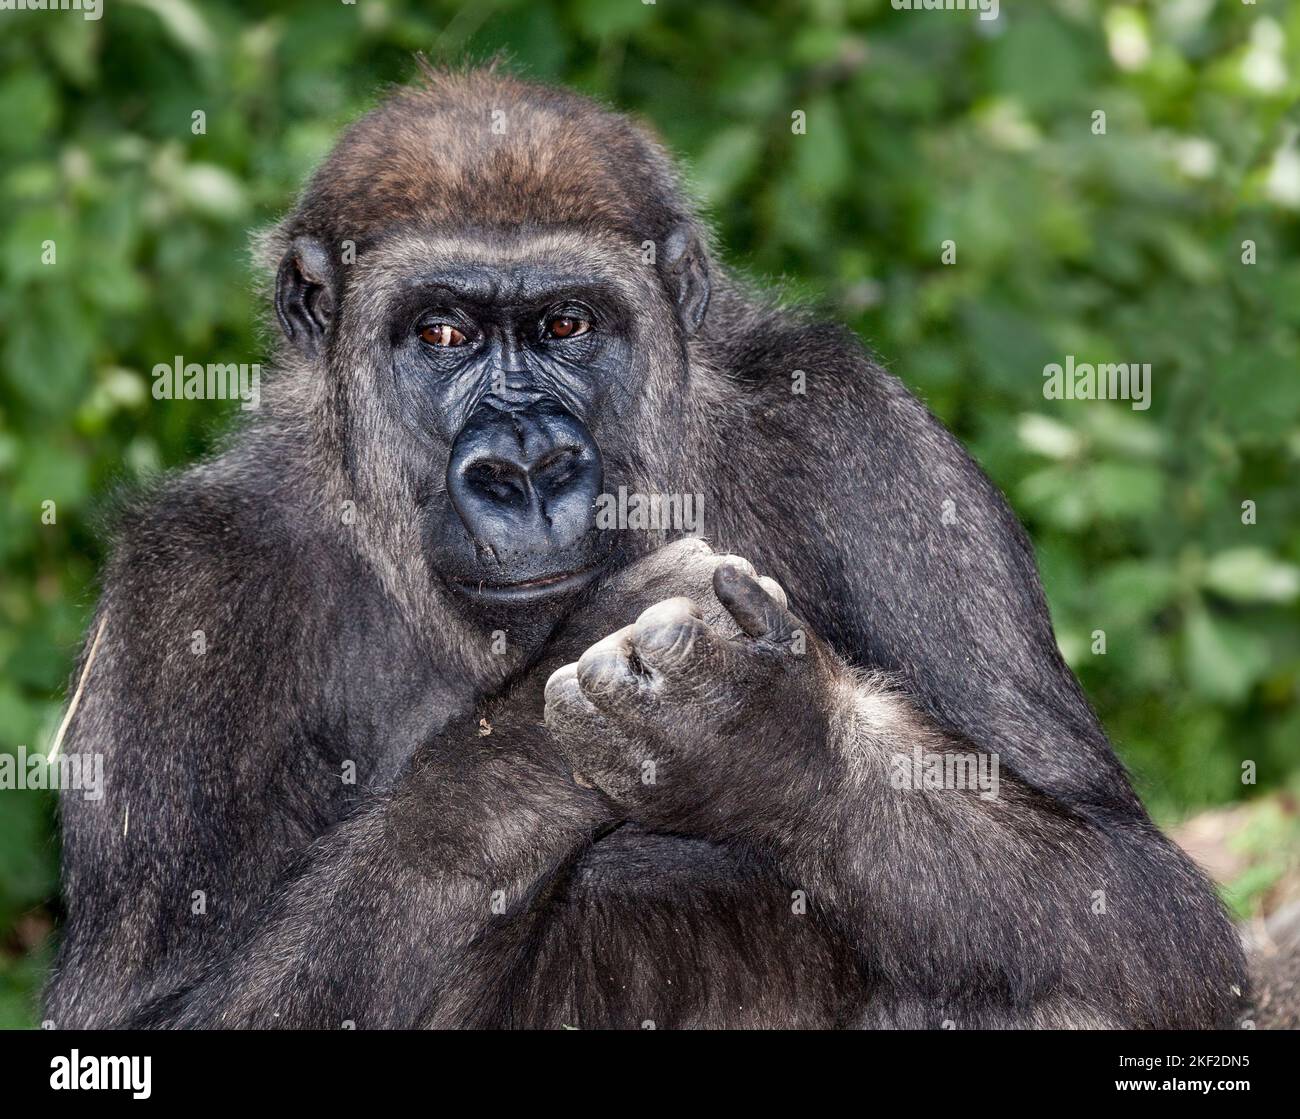 Los gorilas son grandes simios herbívoros, predominantemente terrestres que habitan los bosques tropicales del África ecuatorial. Foto de stock